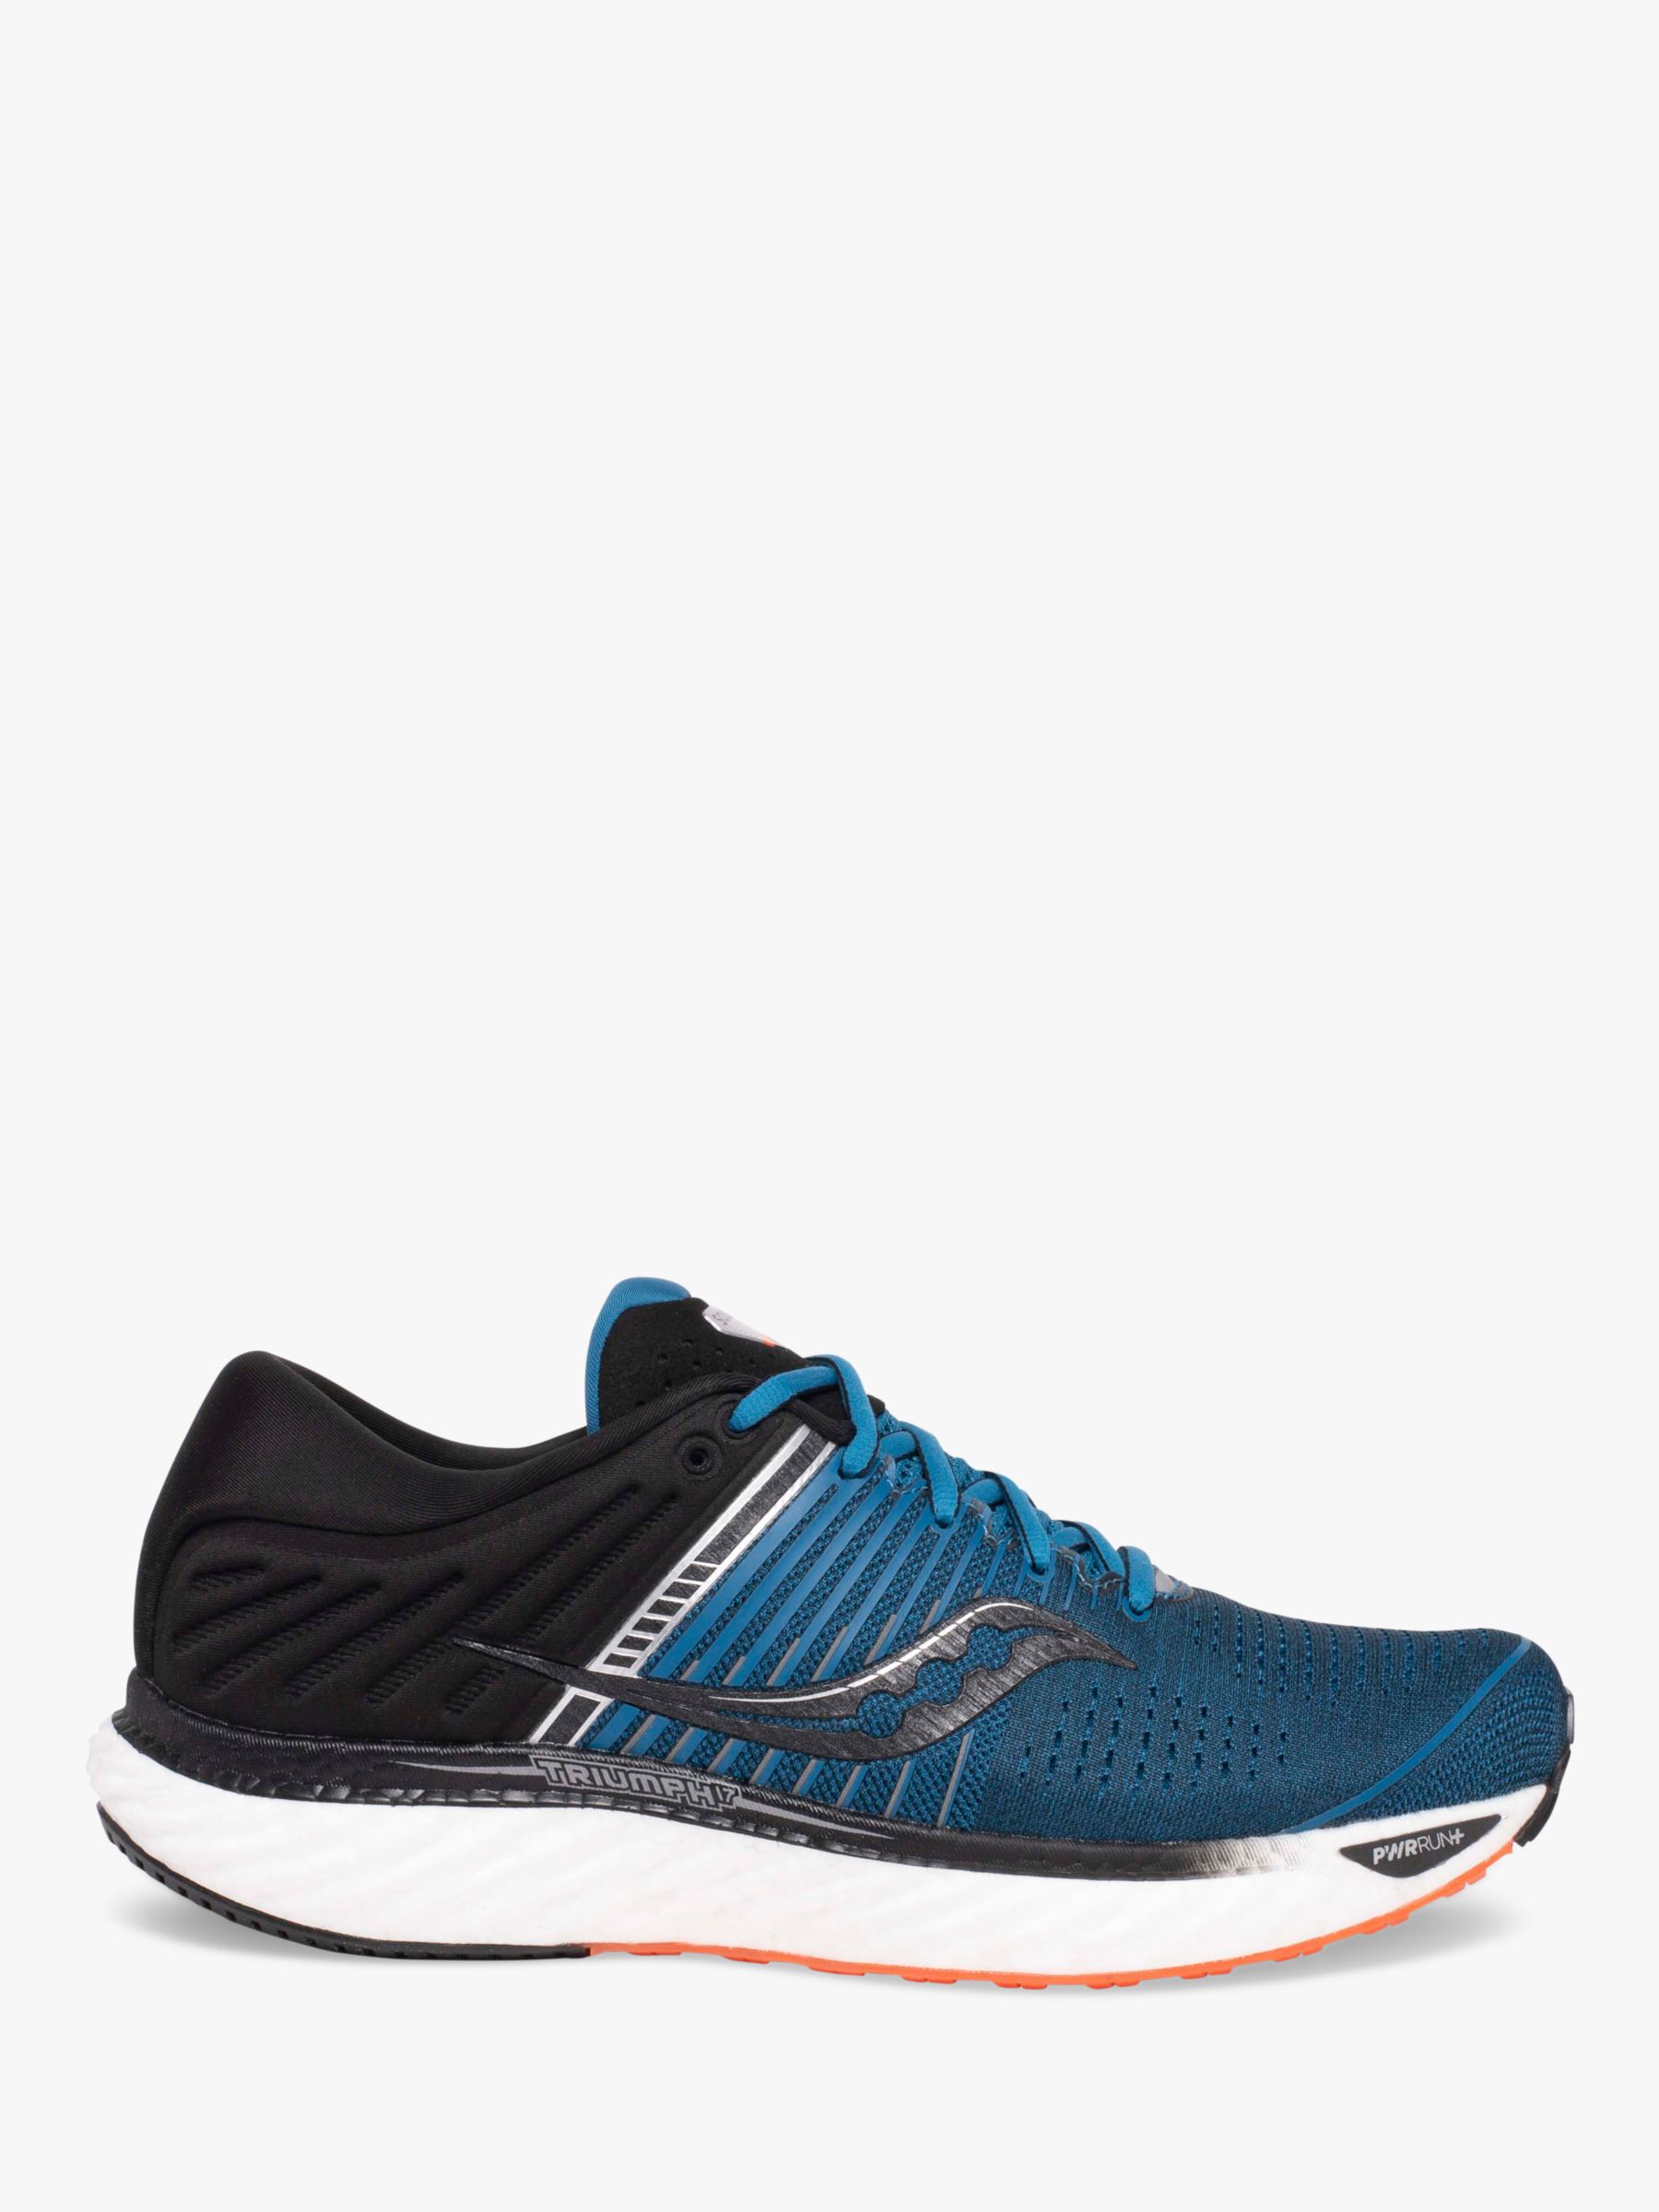 Saucony Triumph 17 Men's Running Shoes, Blue/Black